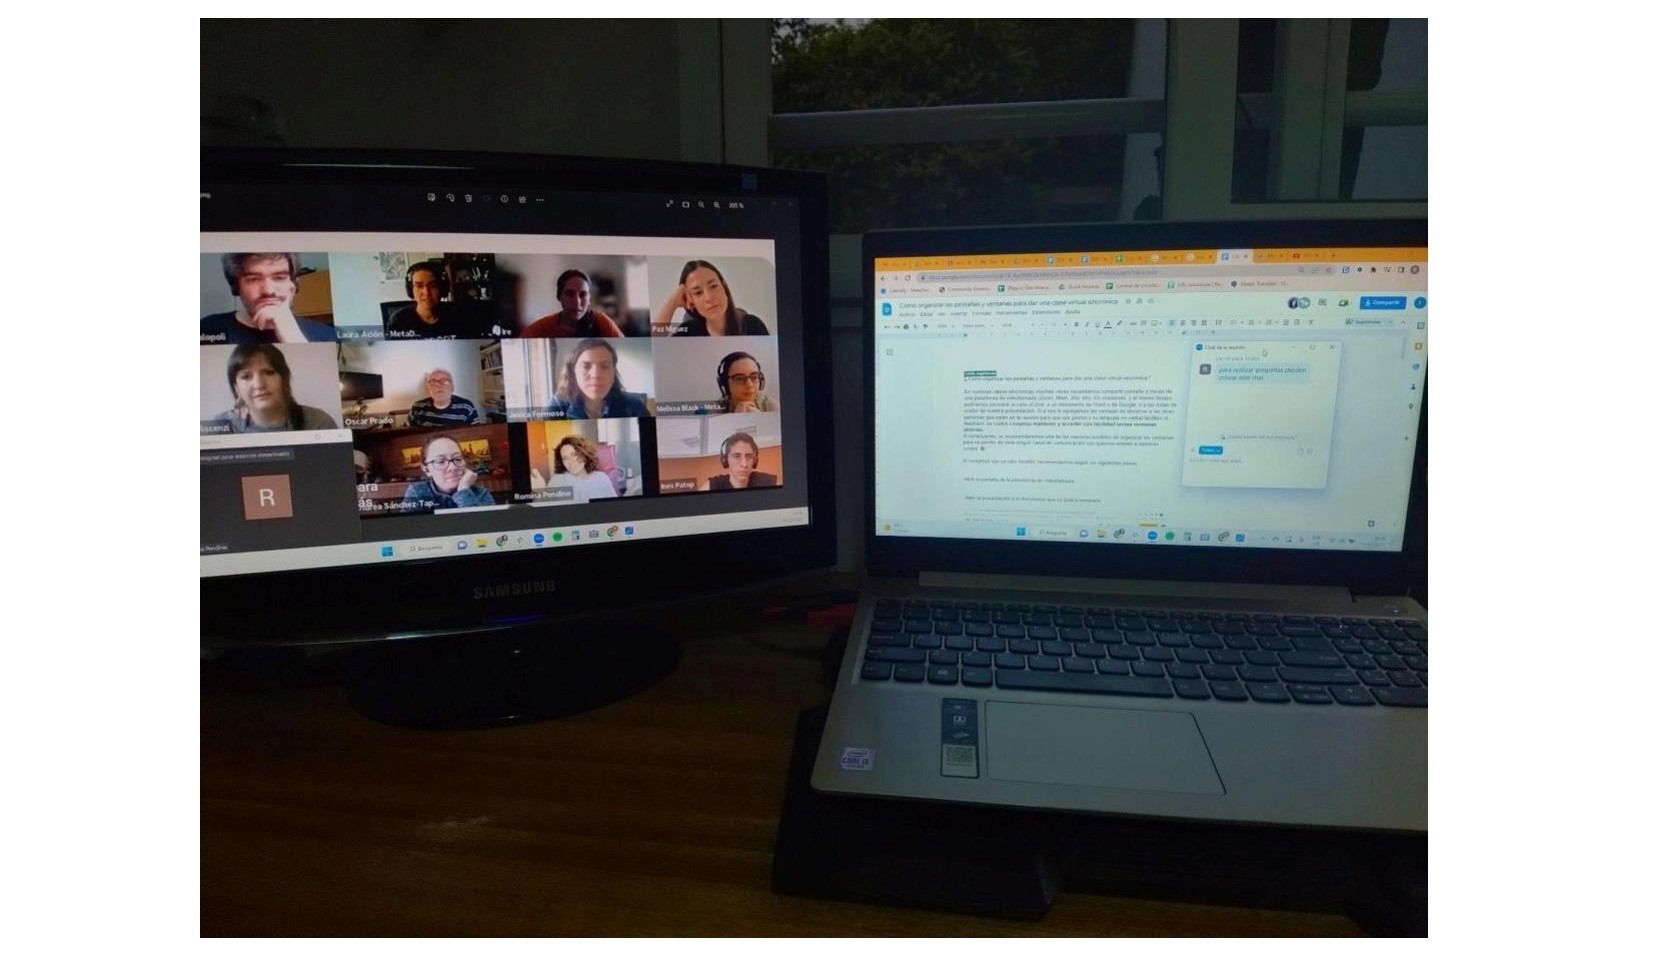 Captura de pantalla de las distintas ventanas utilizadas para compartir contenido a través de una videollamada”